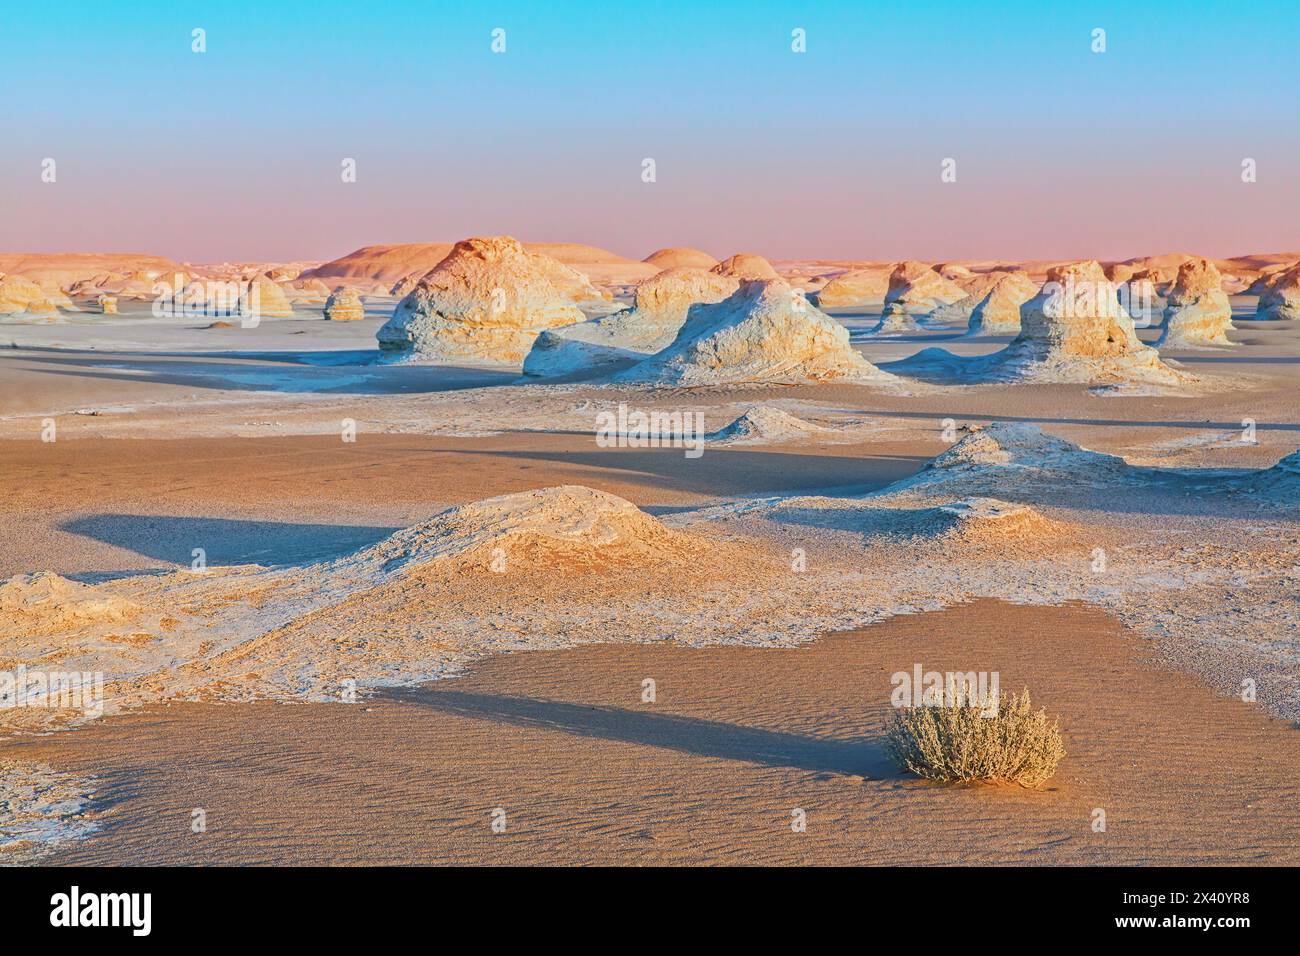 Formations de sable et de calcaire blanc au coucher du soleil dans une mer de sable, avec des ombres dans la lumière du soir, zone protégée du désert Blanc ; Egypte Banque D'Images